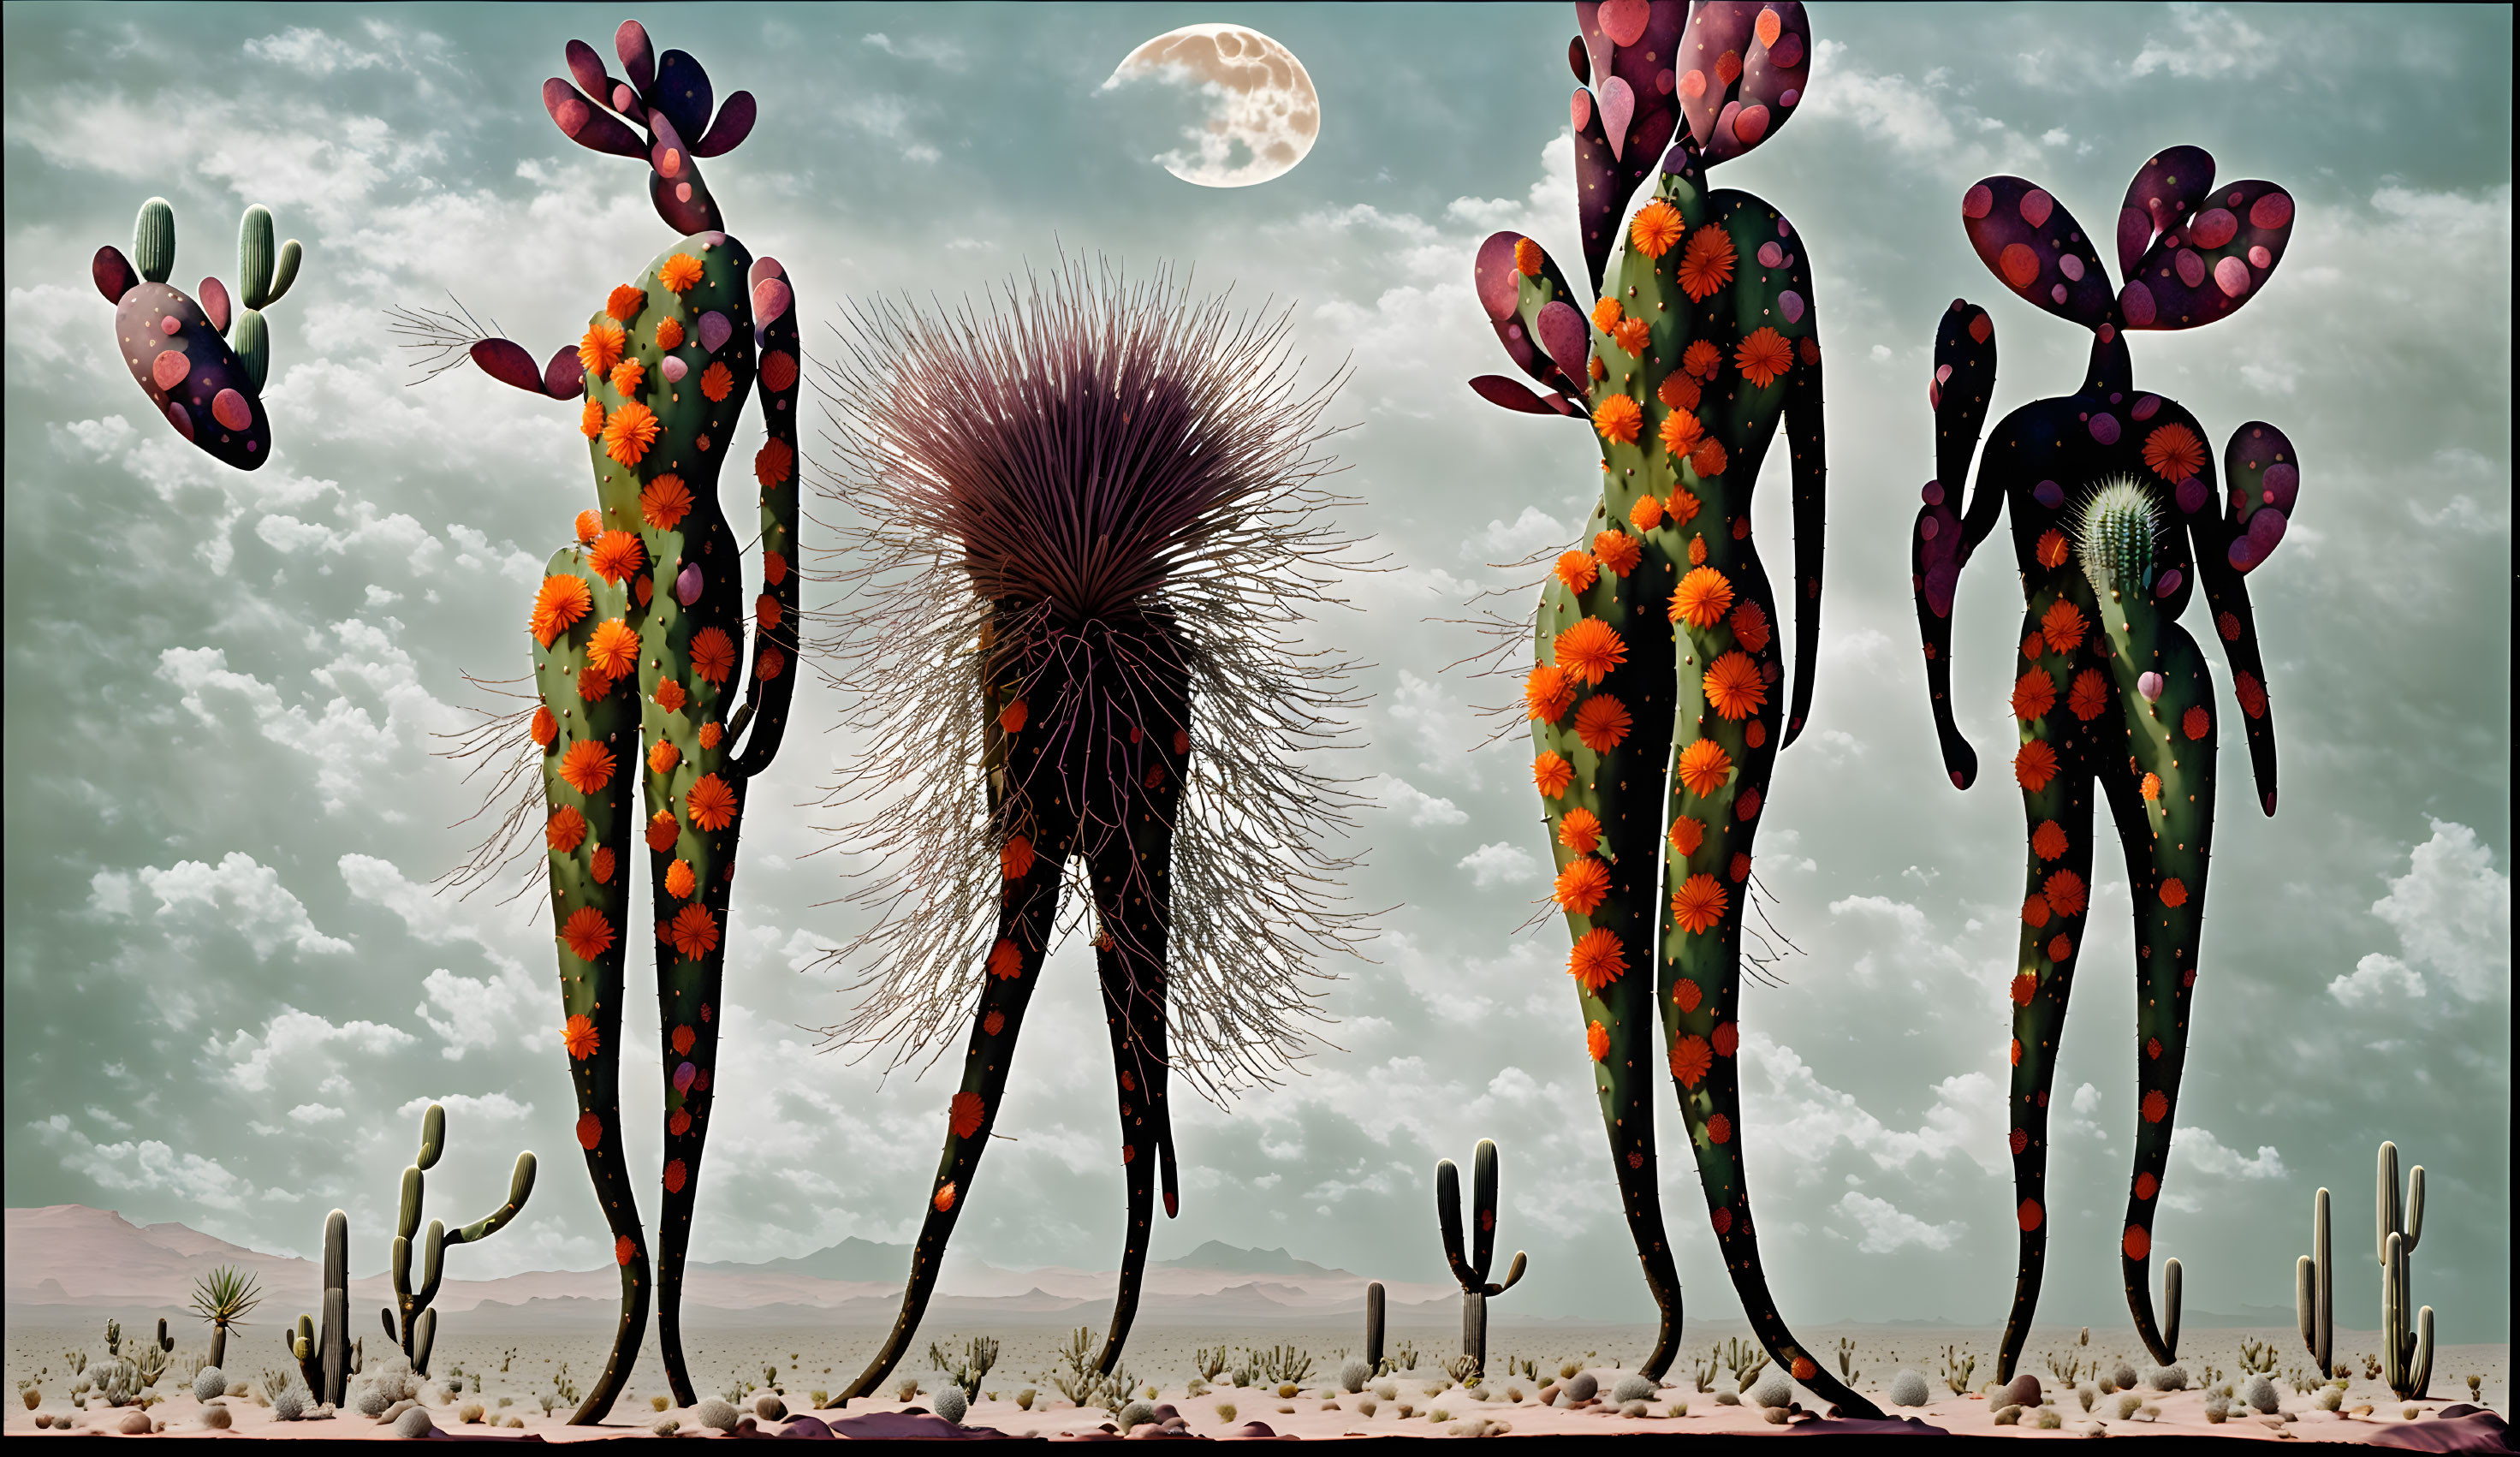 Cactus Creatures